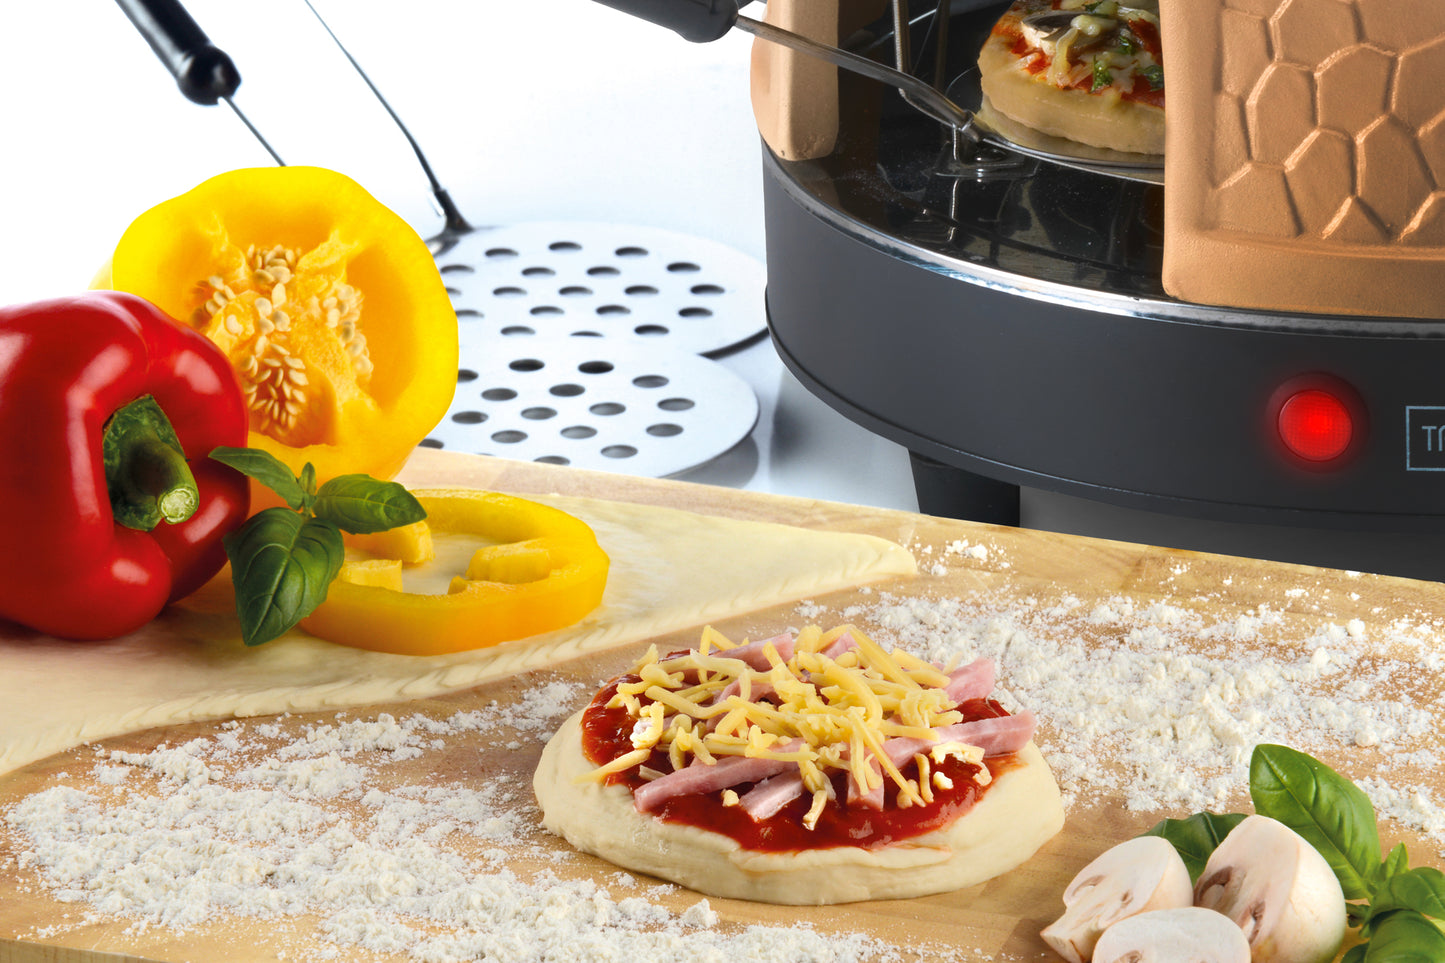 Trebs 99392 - Pizzagusto oven - 8 personen